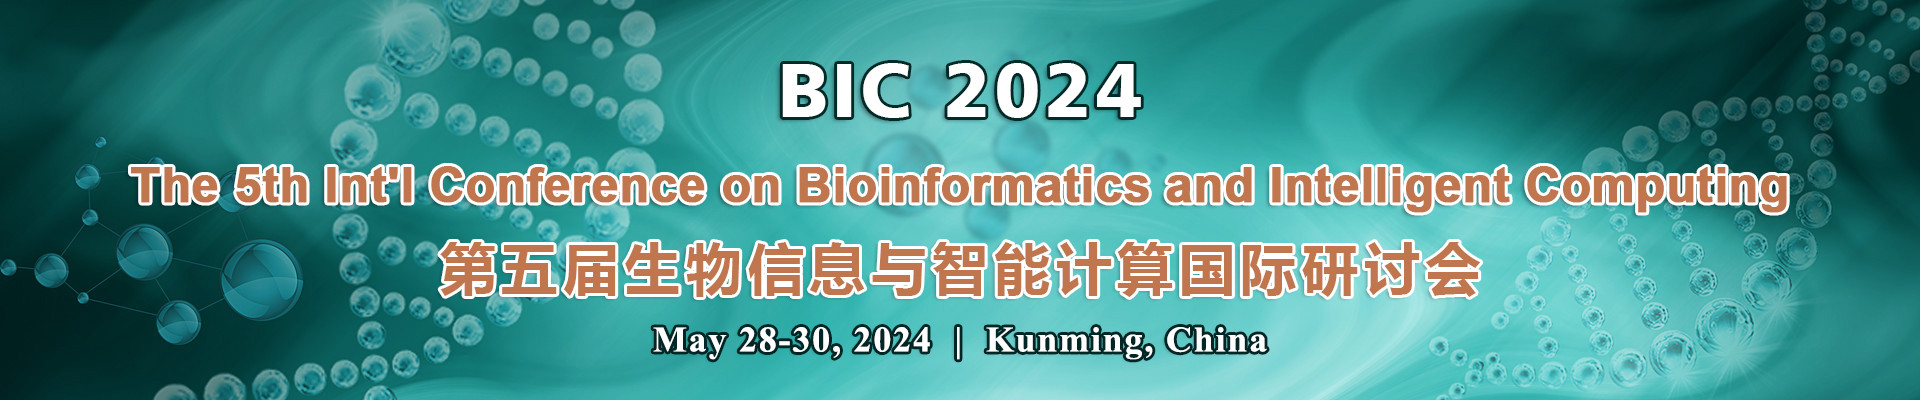 第五屆生物信息與智能計算國際研討會(BIC 2024)